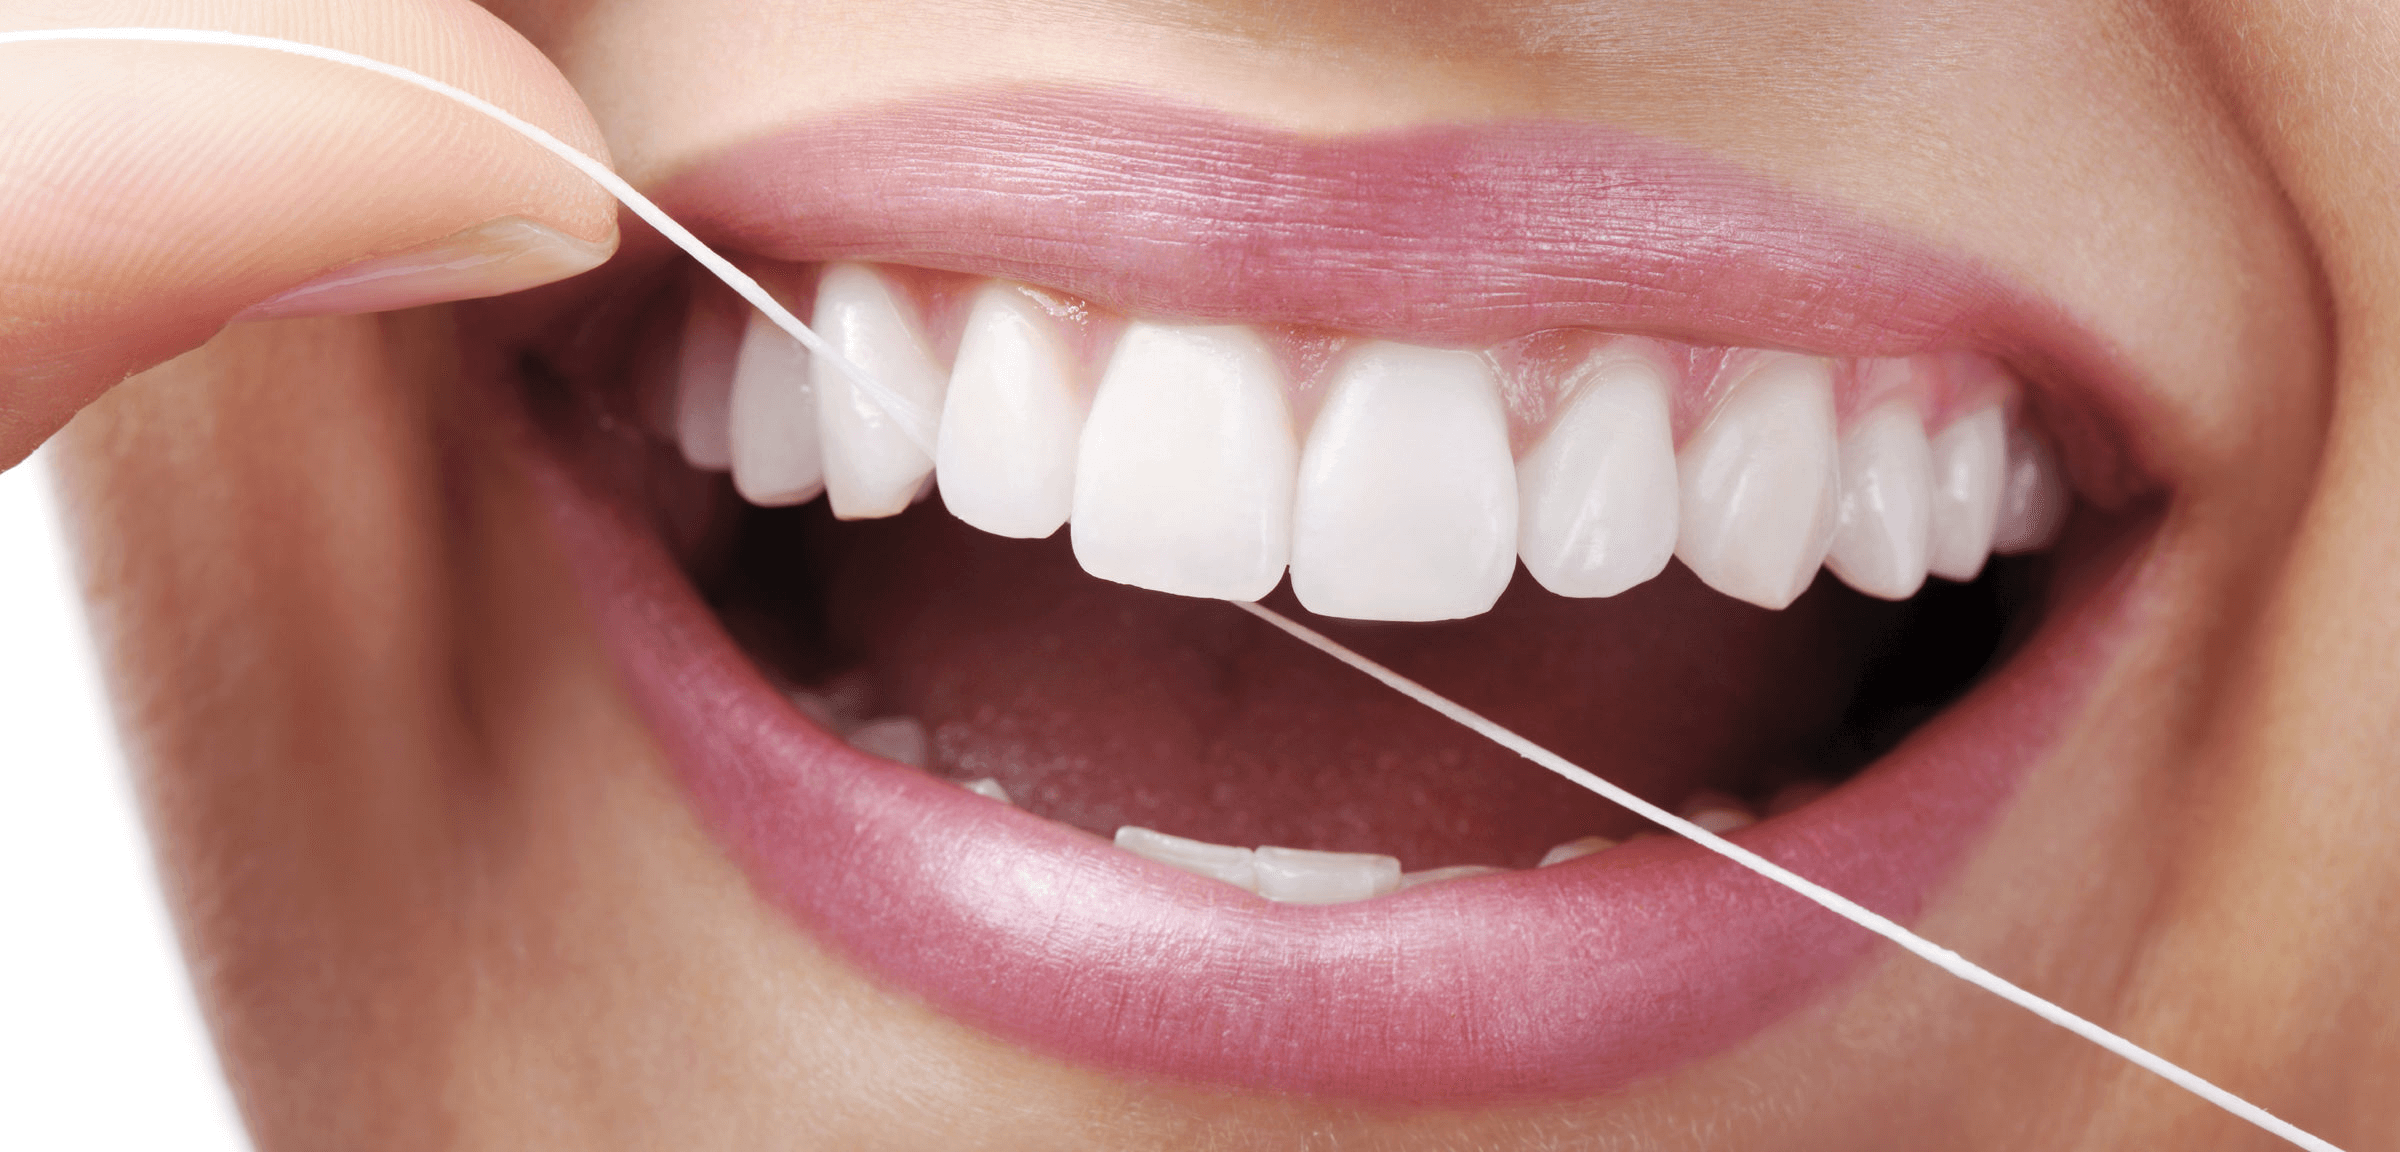 نخ دندان چیست و استفاده از آن چه مزیتهایی دارد؟